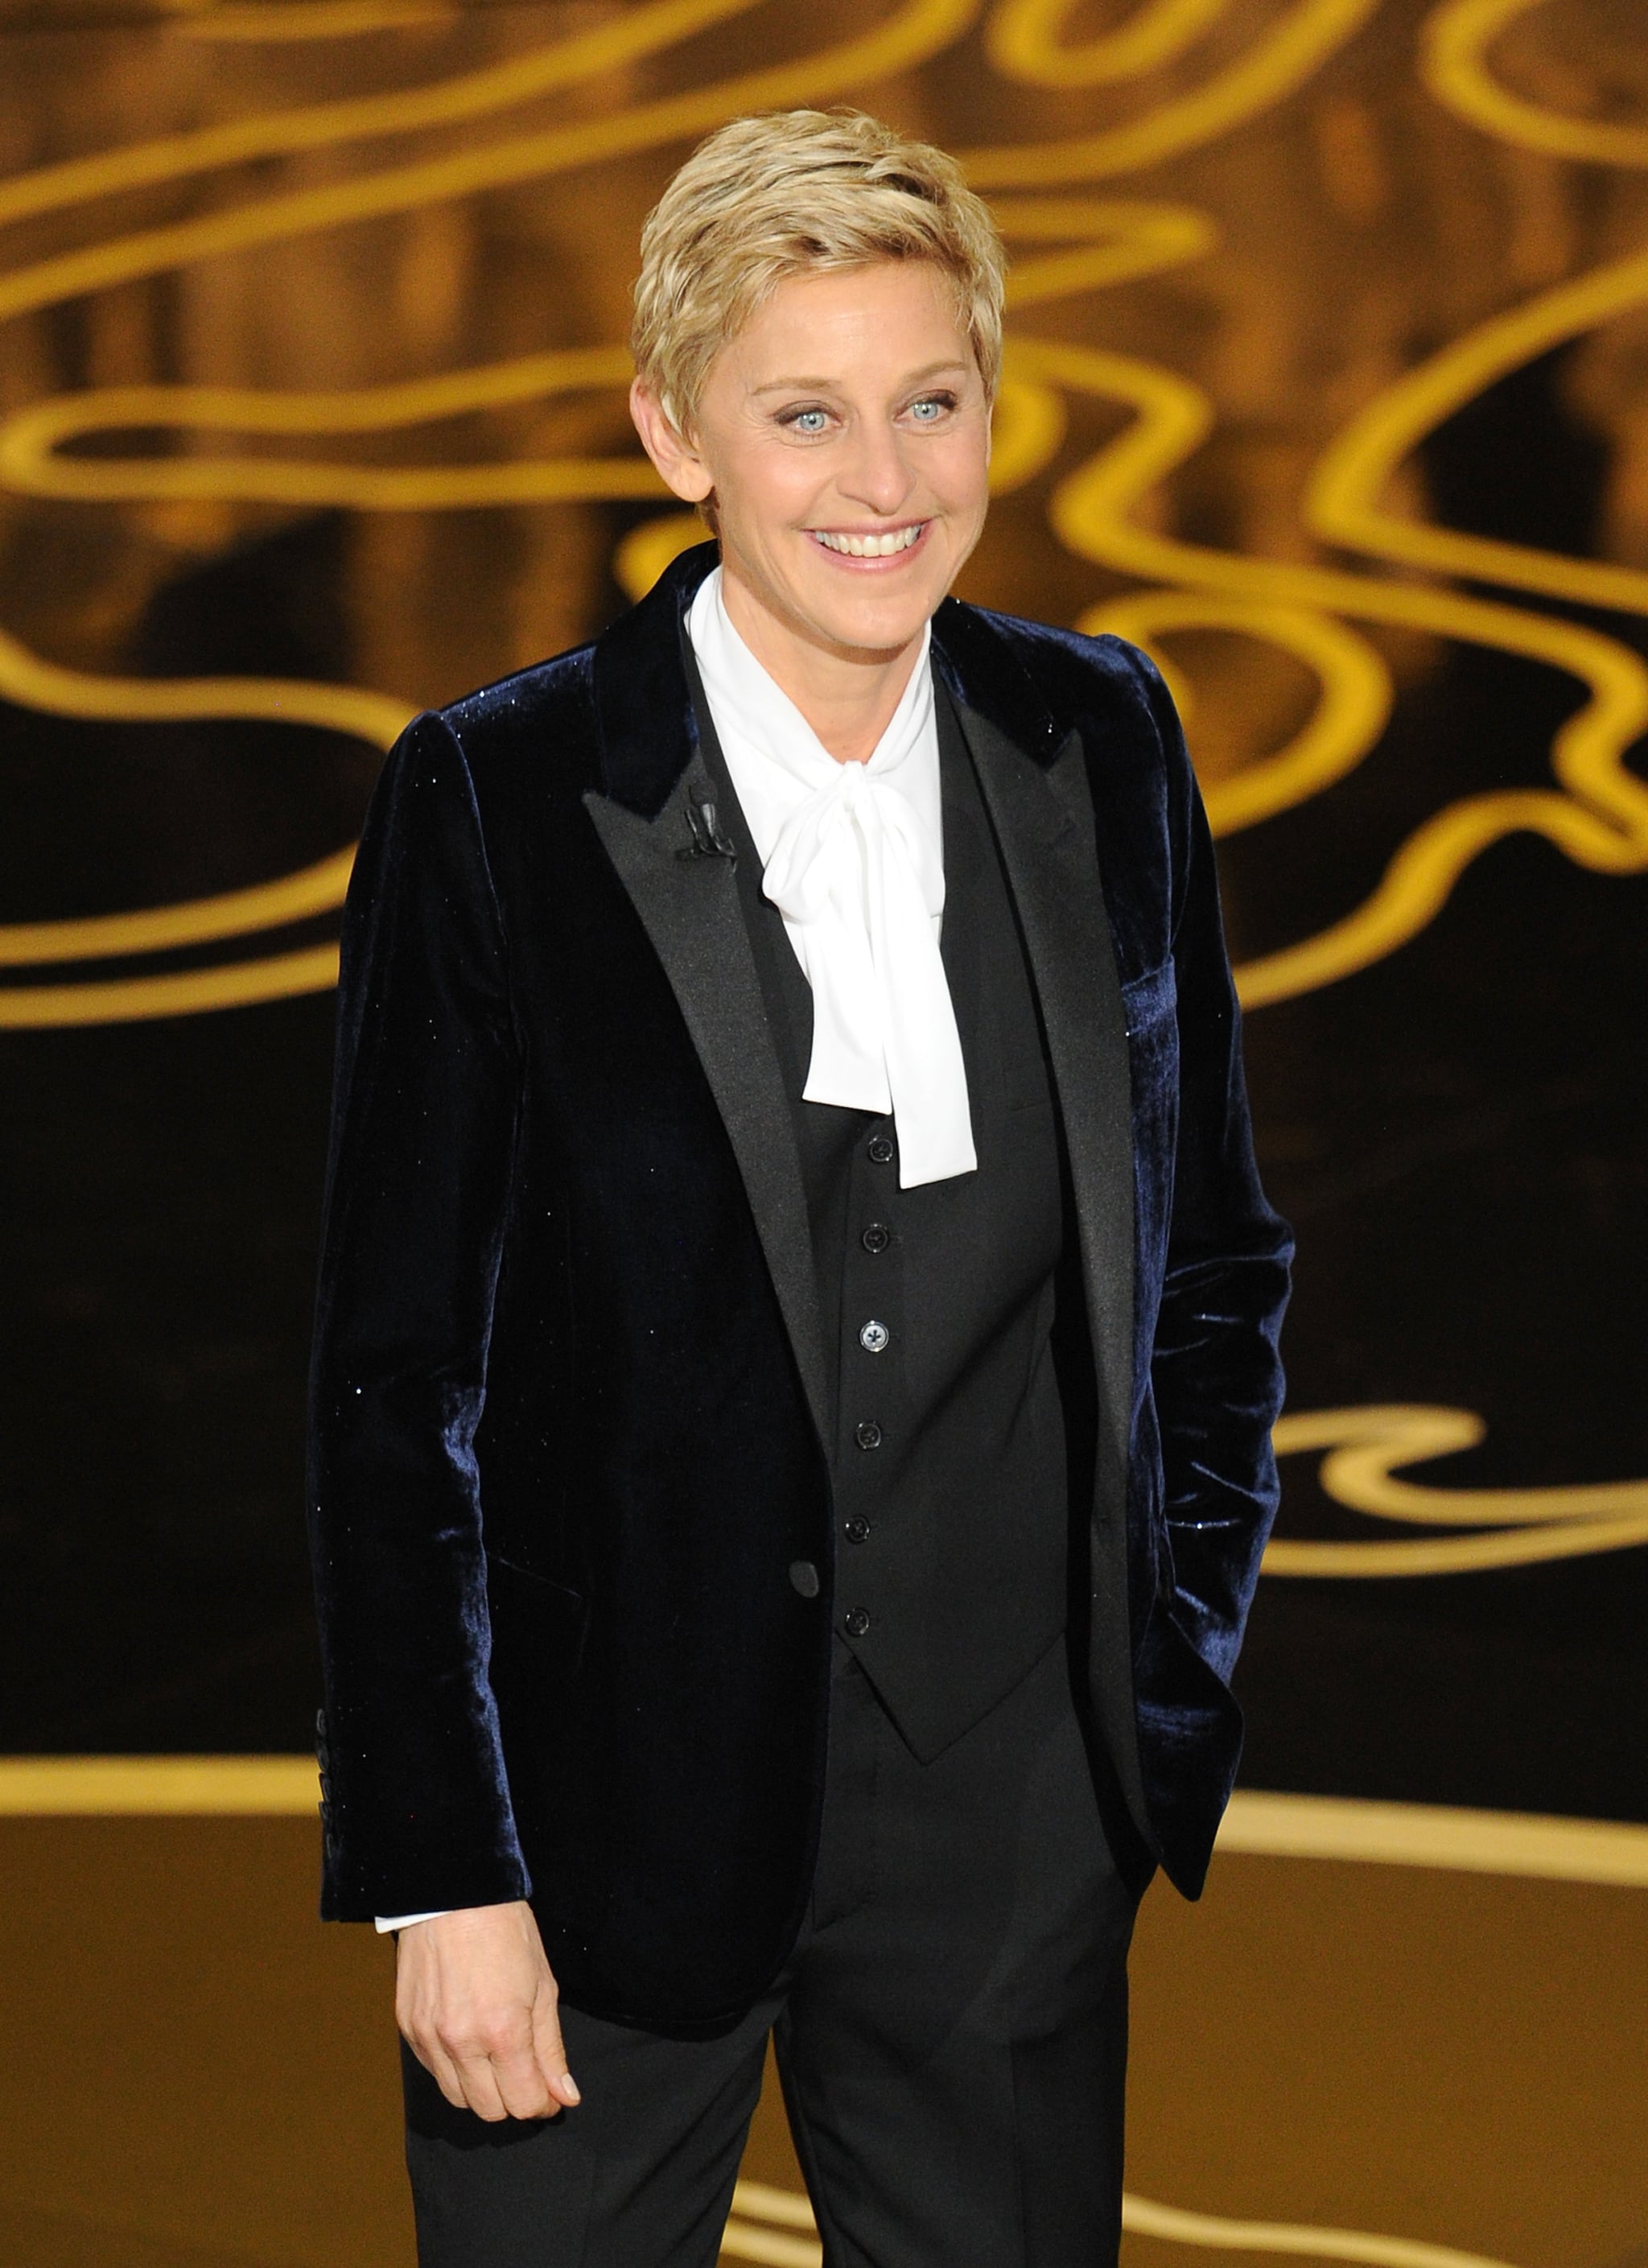 Ellen Degeneres Outfit At Oscars 2014 Popsugar Fashion